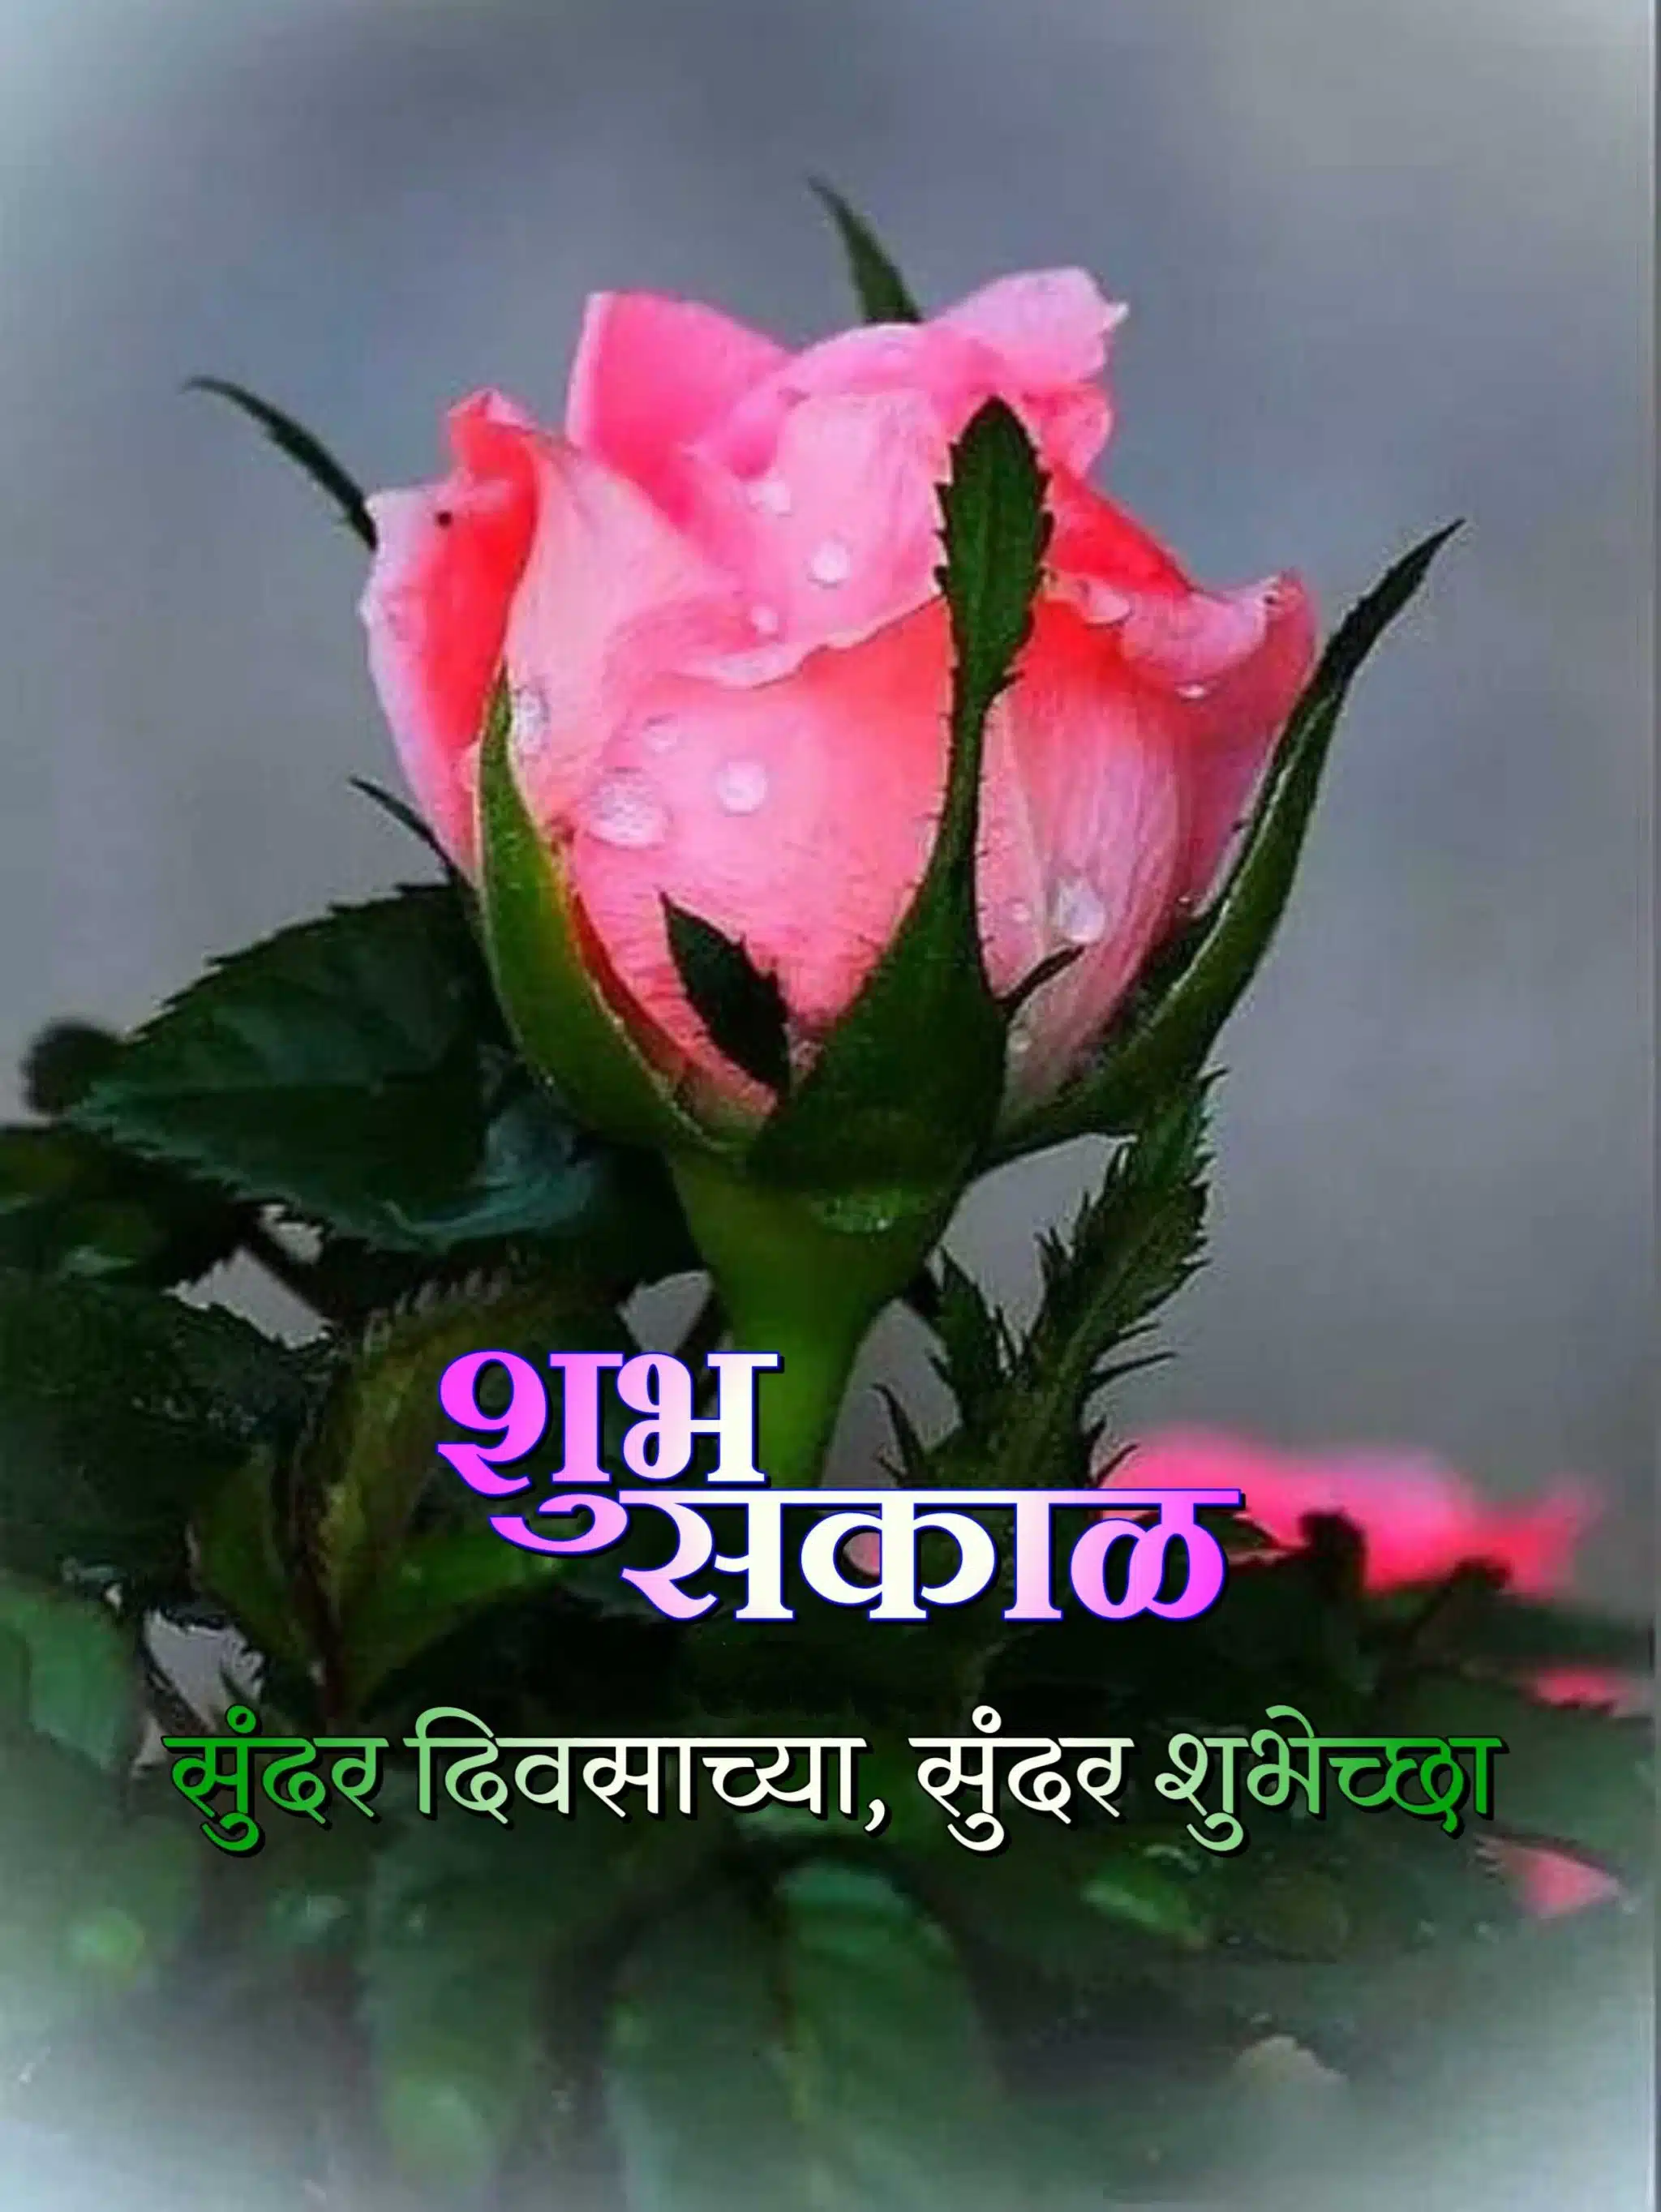 Shubh Sakal Rose Images, Shubh Sakal rose